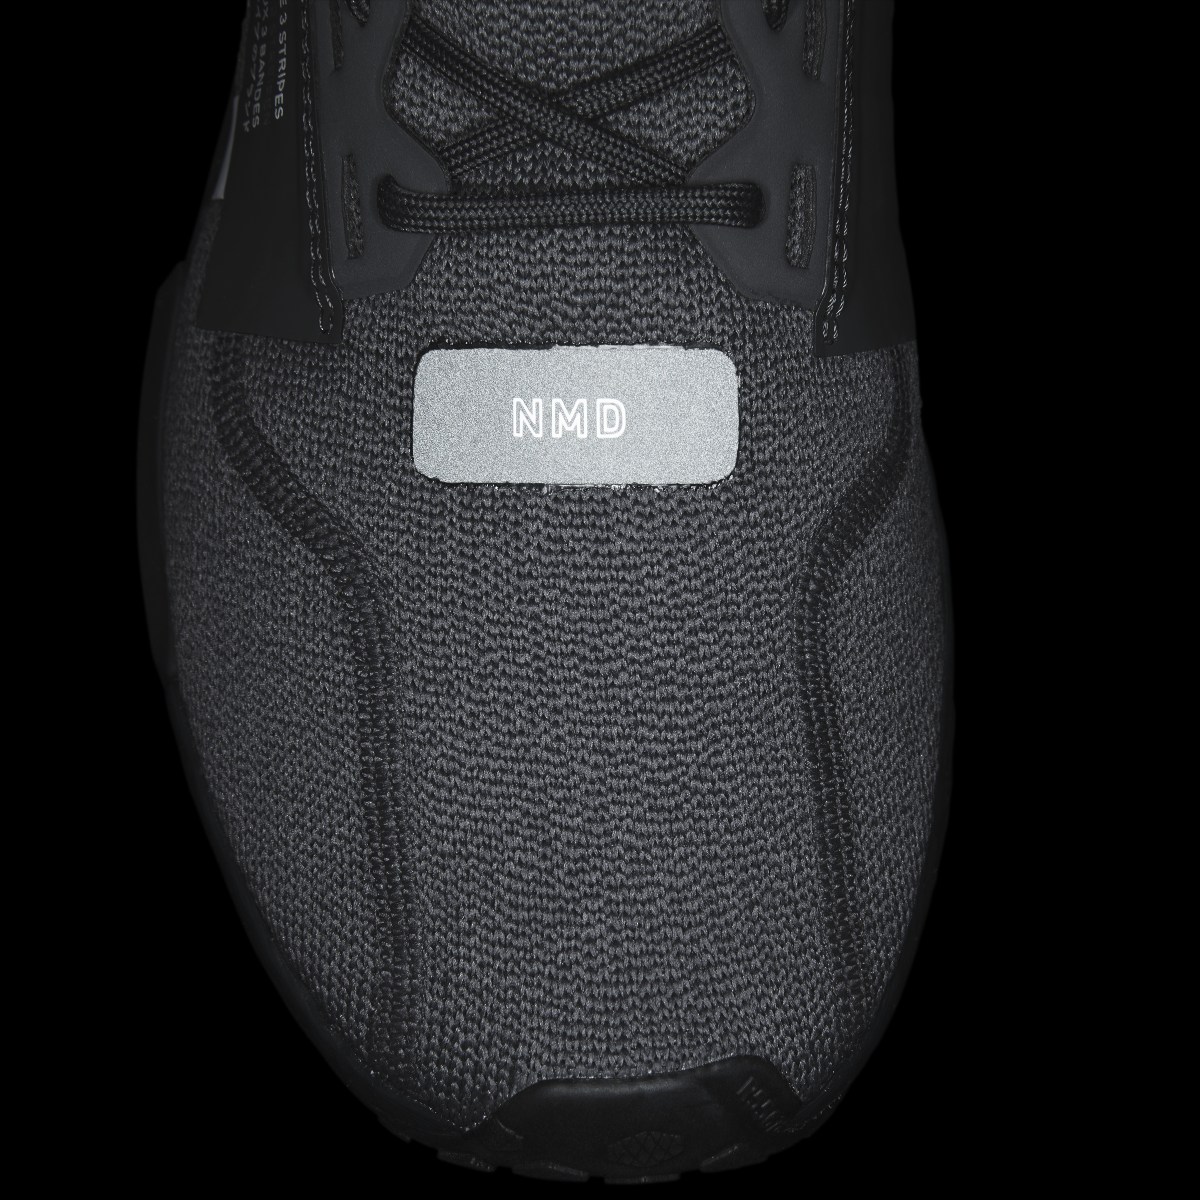 Adidas NMD_R1 V2 Shoes. 10